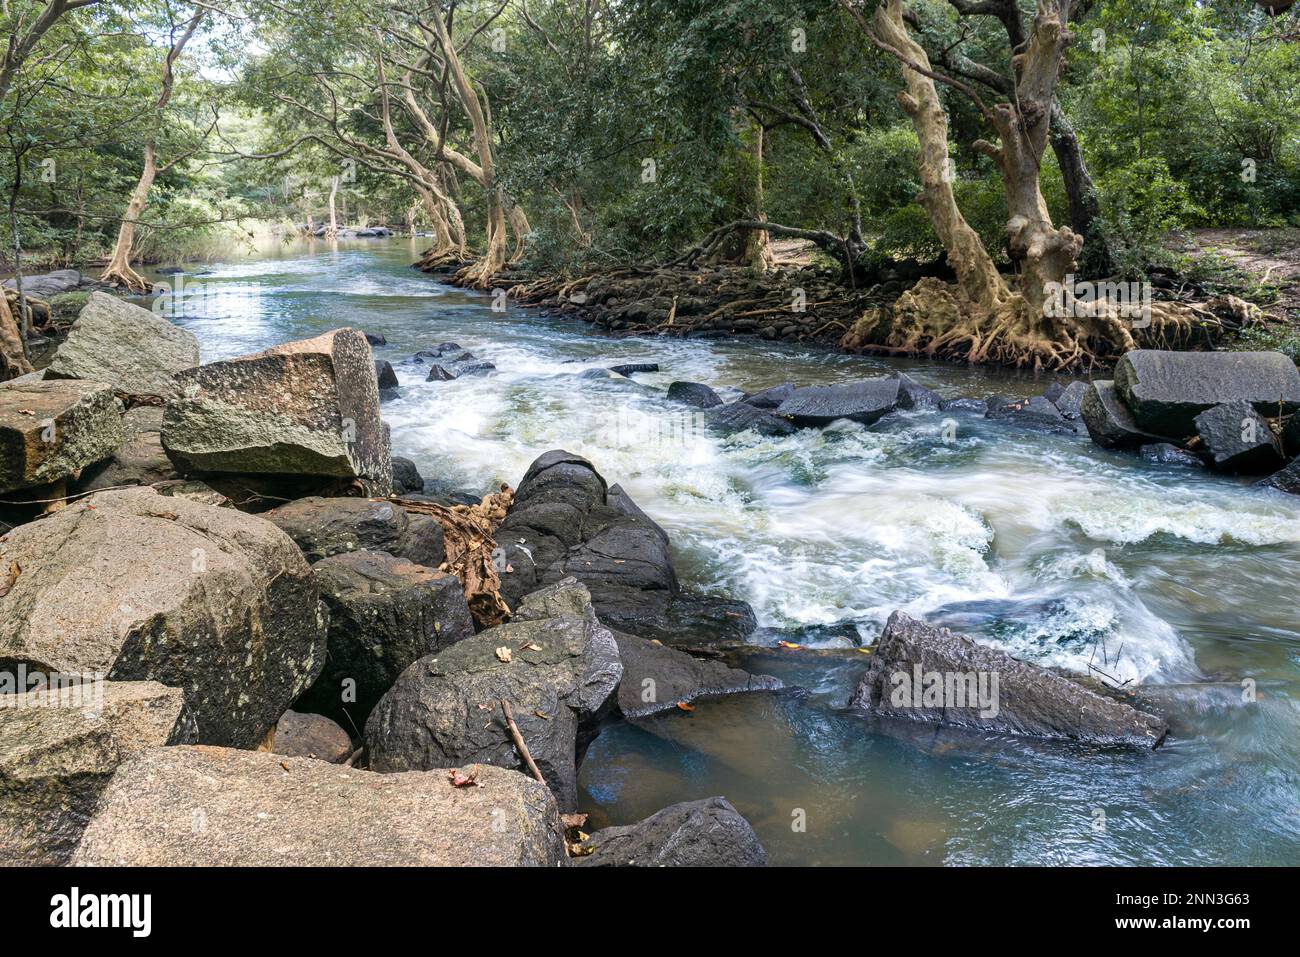 Un tranquillo paesaggio nella giungla caratterizzato da un piccolo fiume che si snoda attraverso le rocce in primo piano, creando una scena tranquilla e naturale. Foto Stock